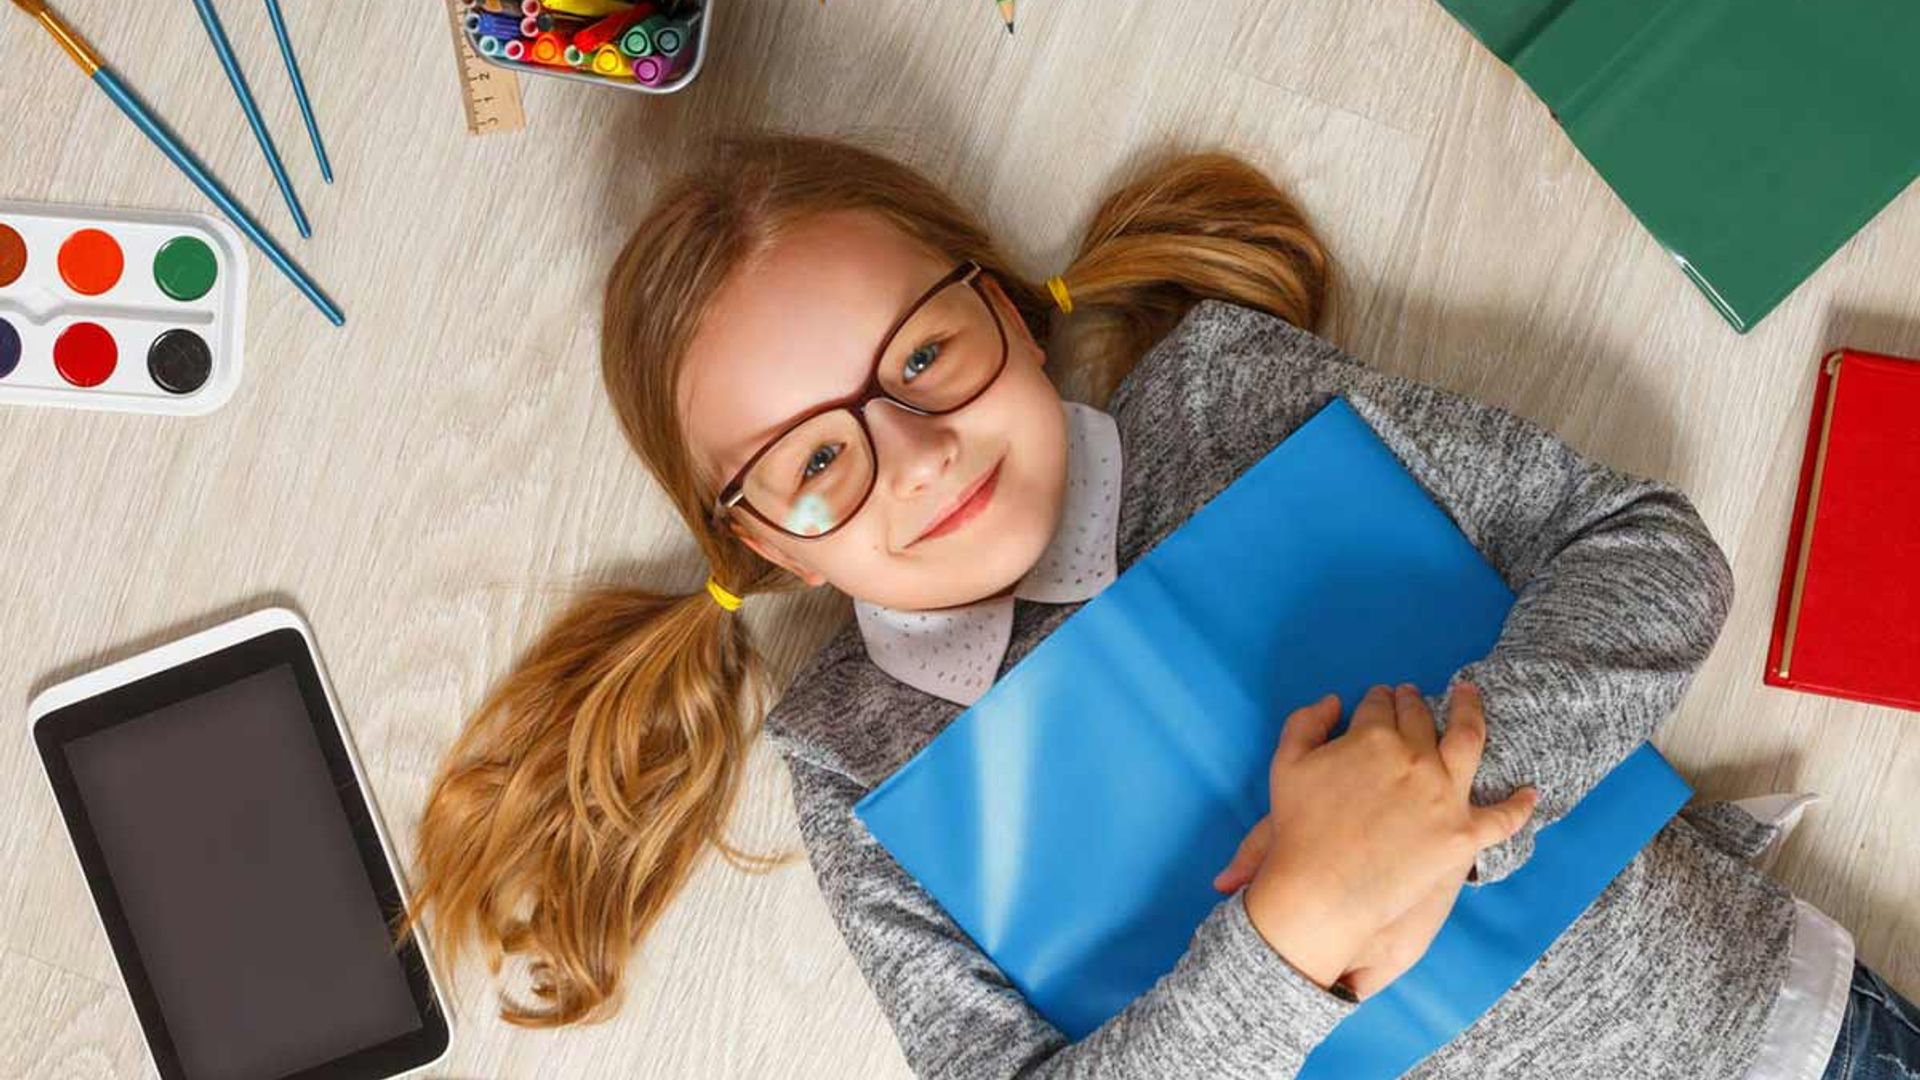 Best back to school tech deals & gadgets 2022: Cheap laptops for kids & wearable tech for children